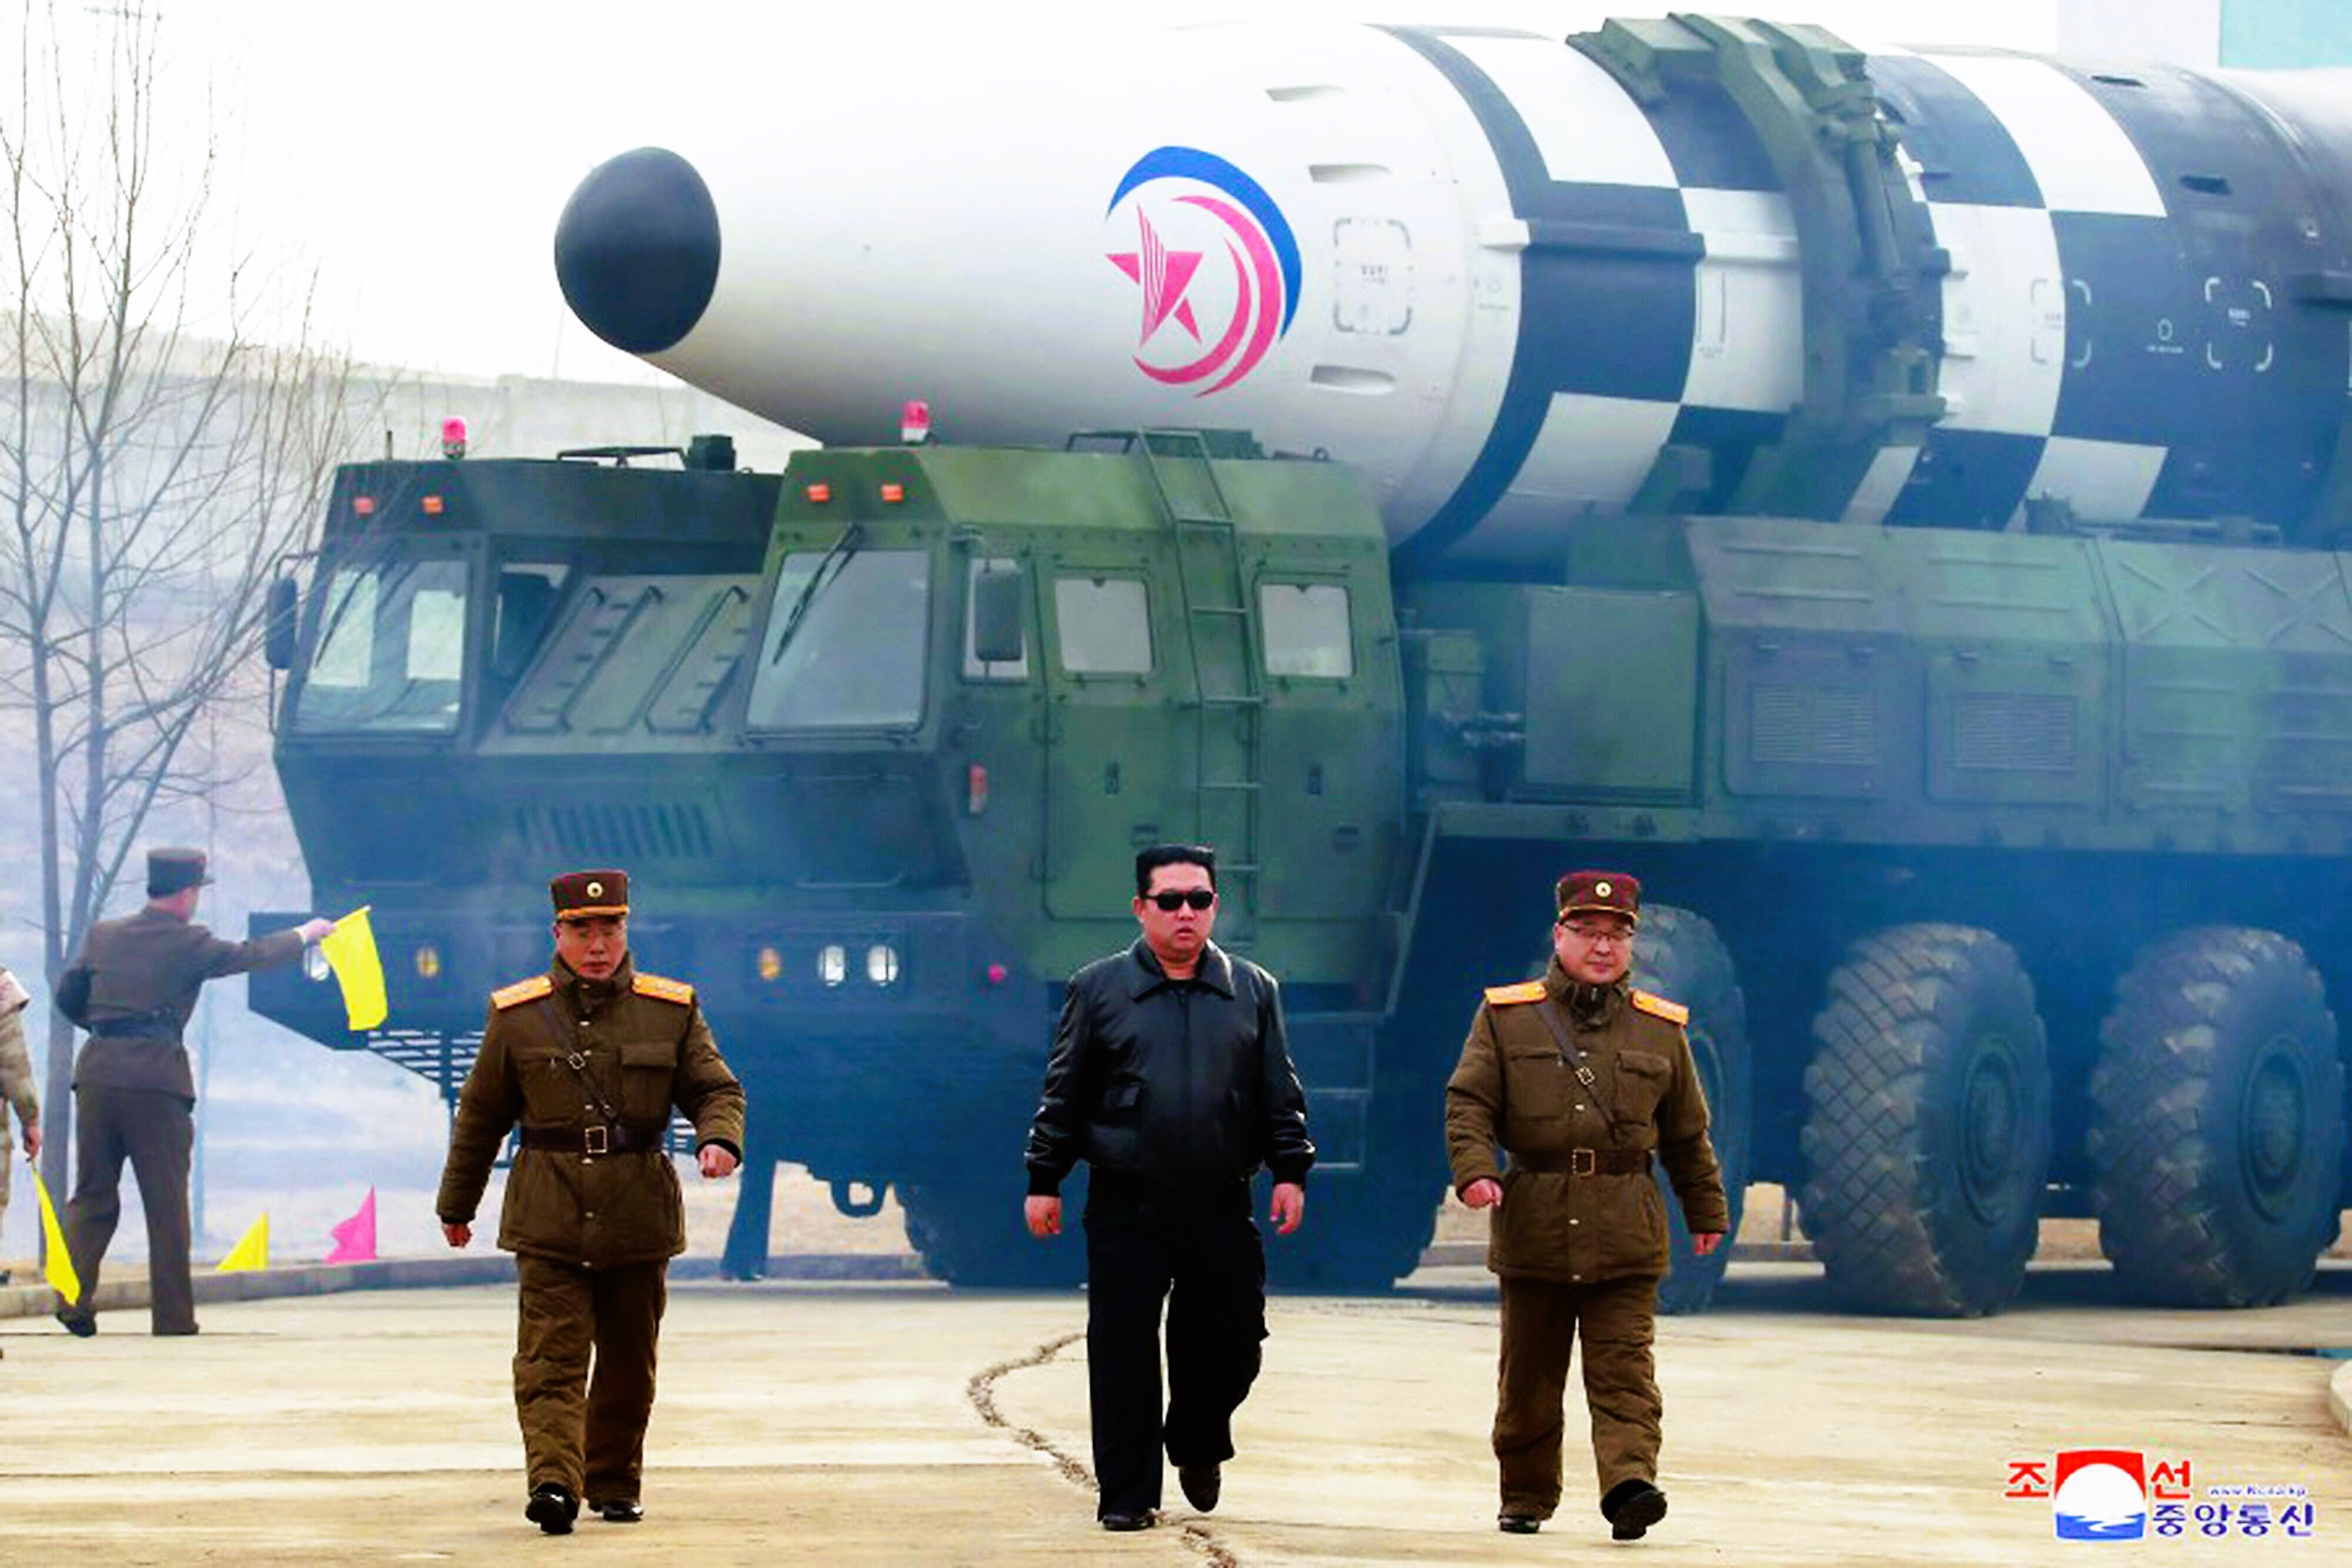 Eskalation in Nordkorea - Kim gibt Schießbefehl! Soldaten in der entmilitarisierten Zone!